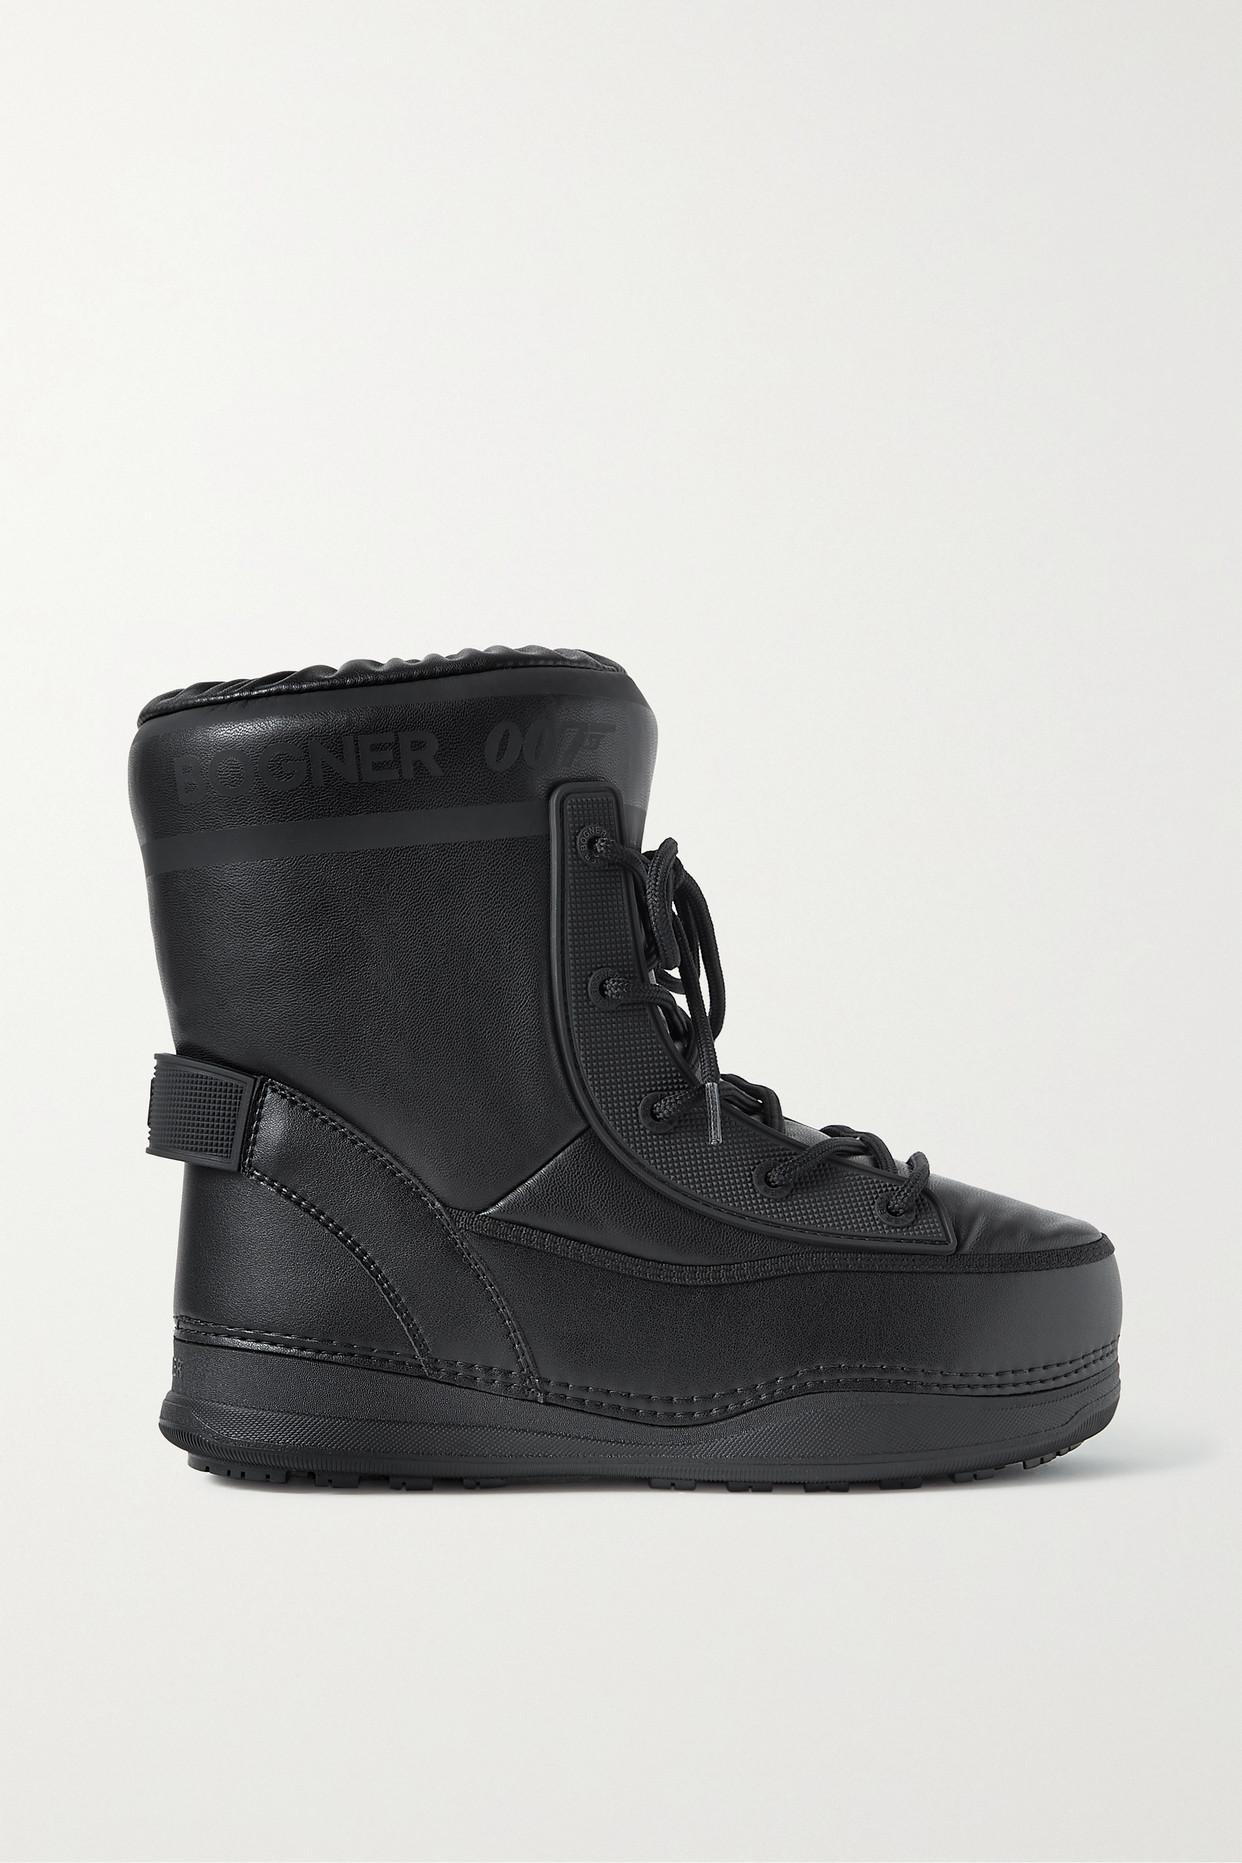 Bogner + 007 La Plagne Rubber-trimmed Faux Leather Snow Boots in Black |  Lyst